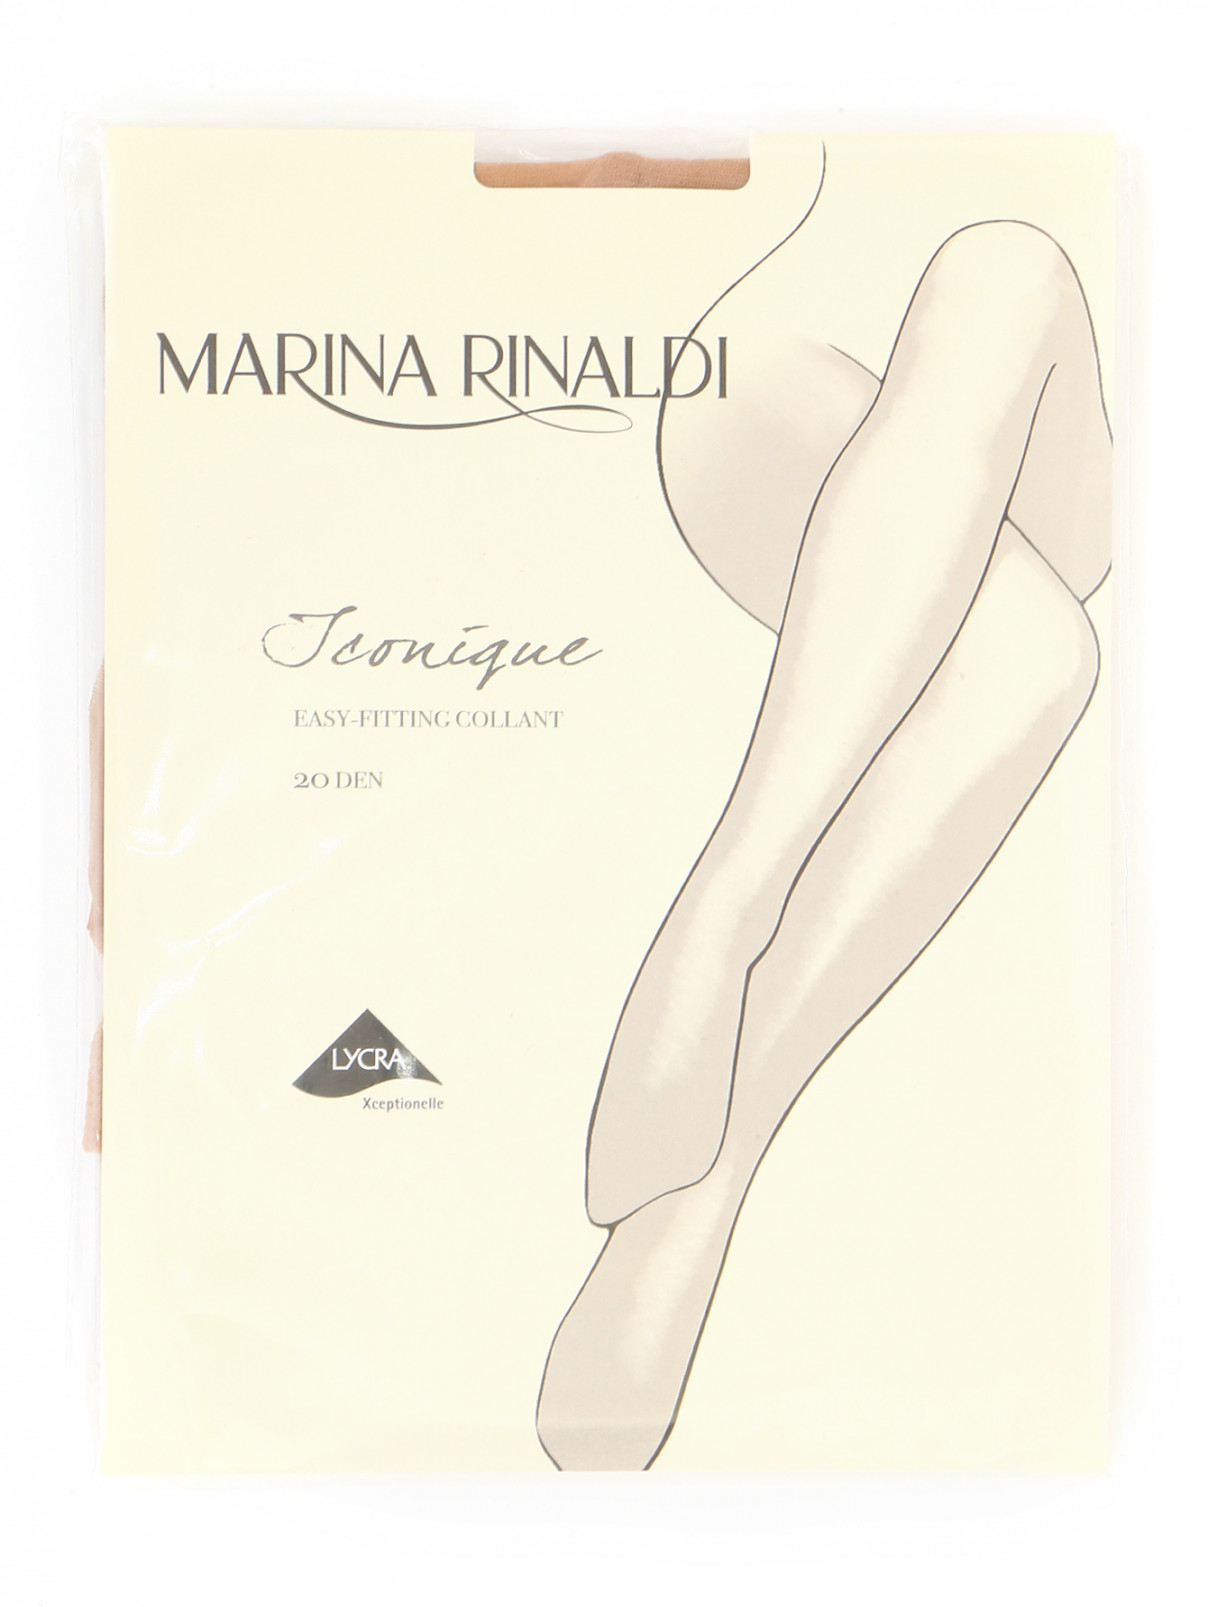 Колготки Marina Rinaldi  –  Общий вид  – Цвет:  Коричневый